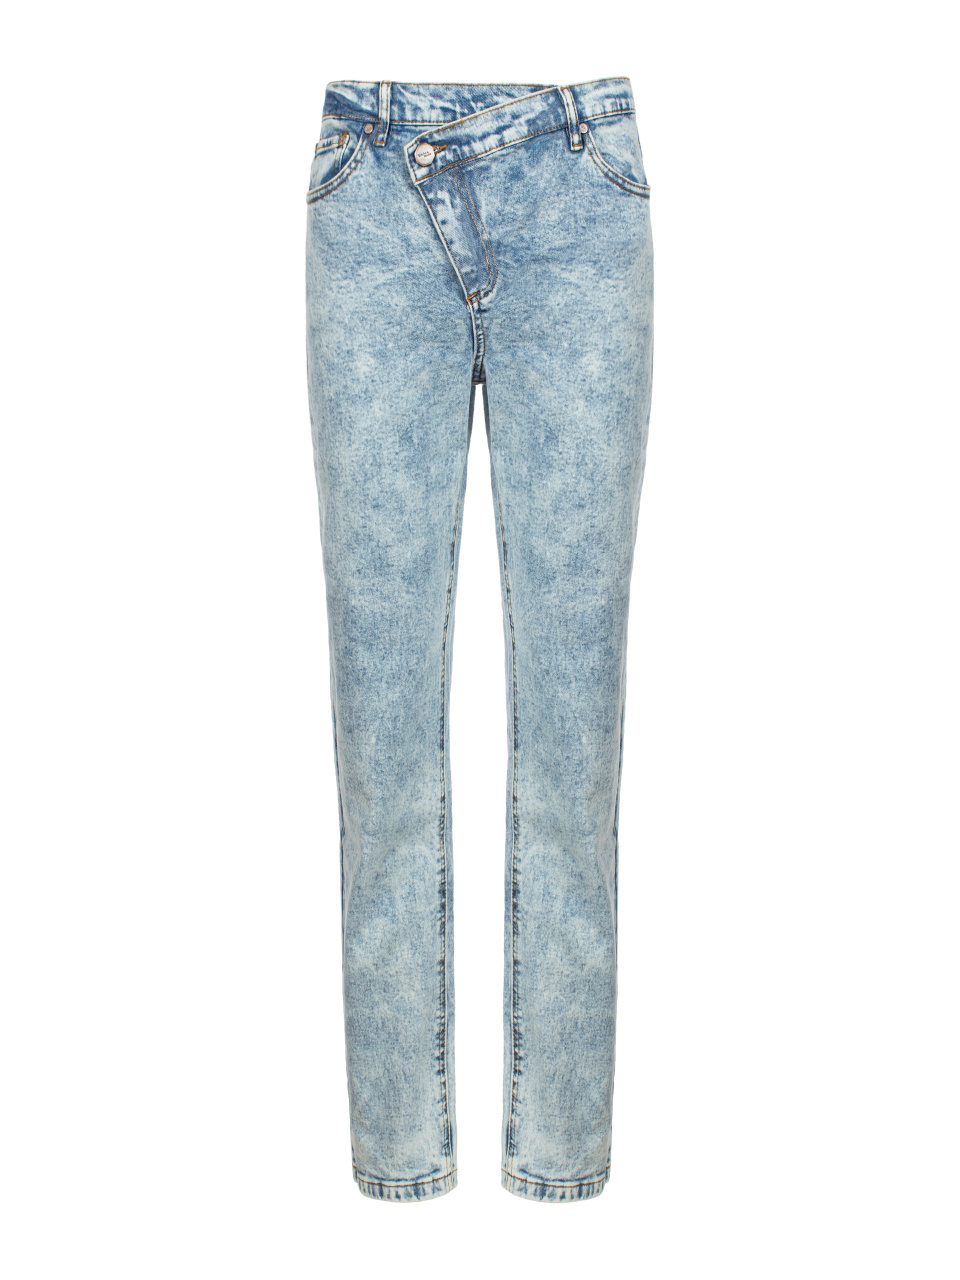 Голубые вареные джинсы с асимметричной застежкой, 1